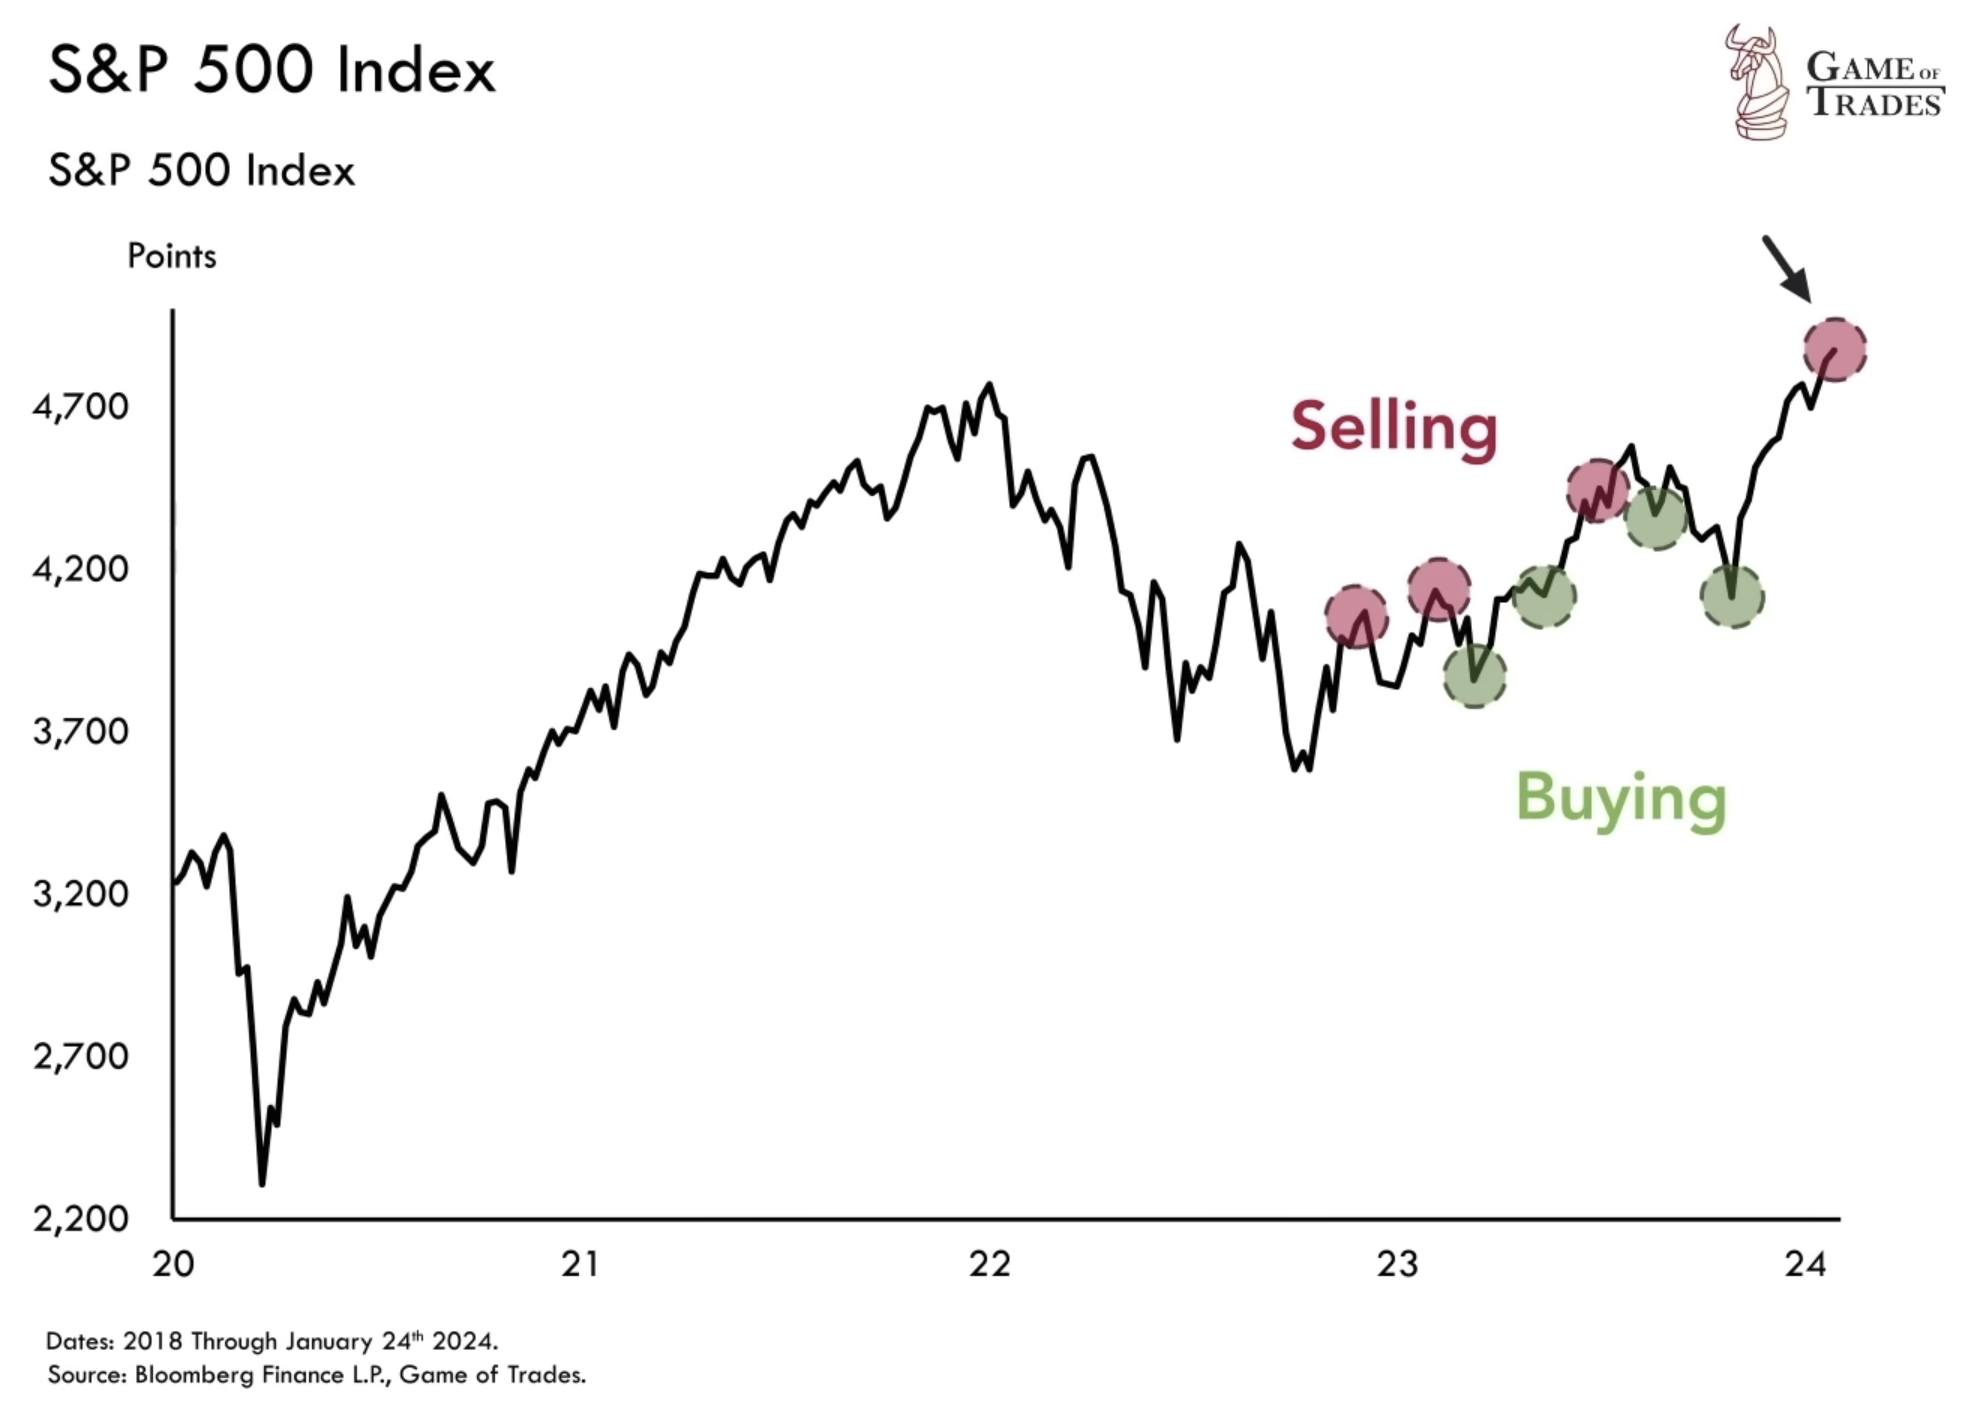 S&P 500 Index data